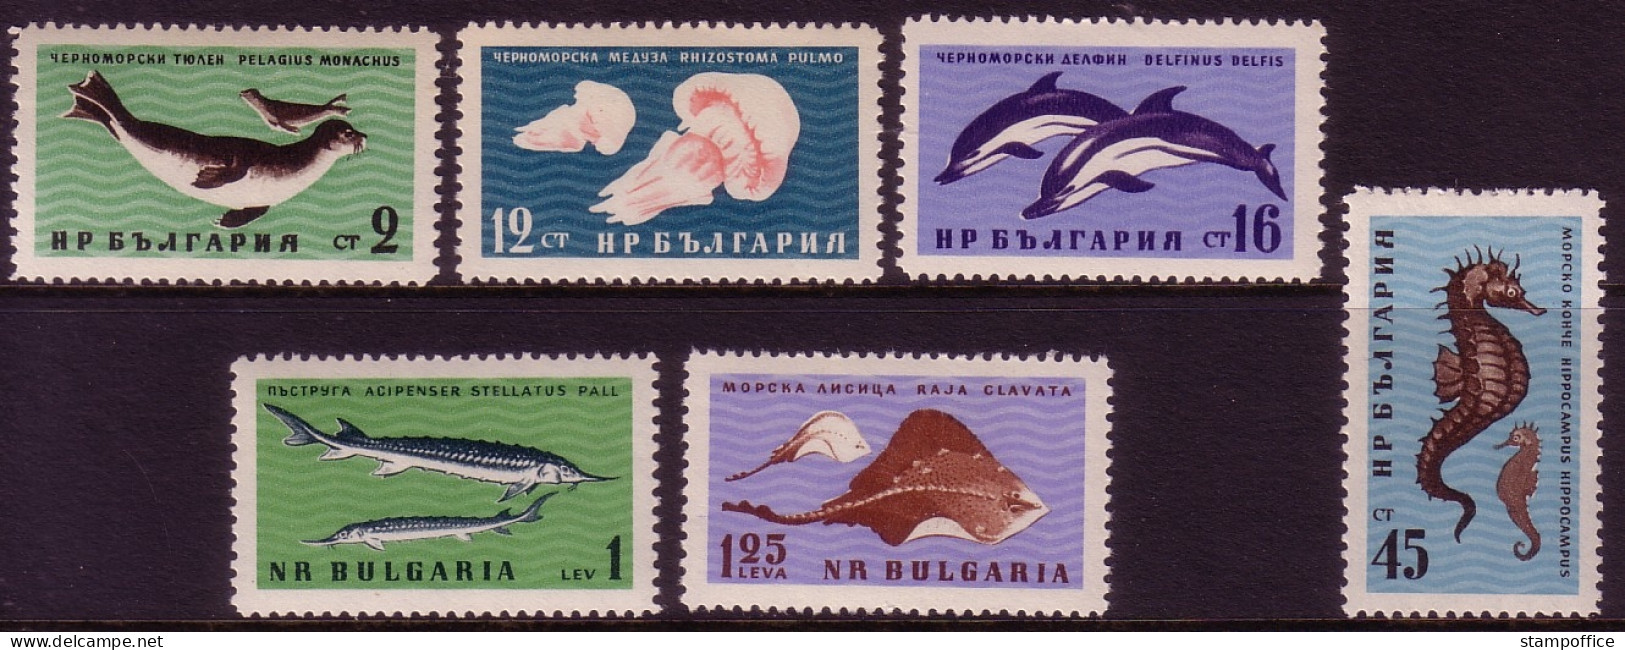 BULGARIEN MI-NR. 1243-1248 POSTFRISCH(MINT) TIERE IM SCHWARZEN MEER DELFIN ROBBE QUALLEN SEEPFERDCHEN - Delfines